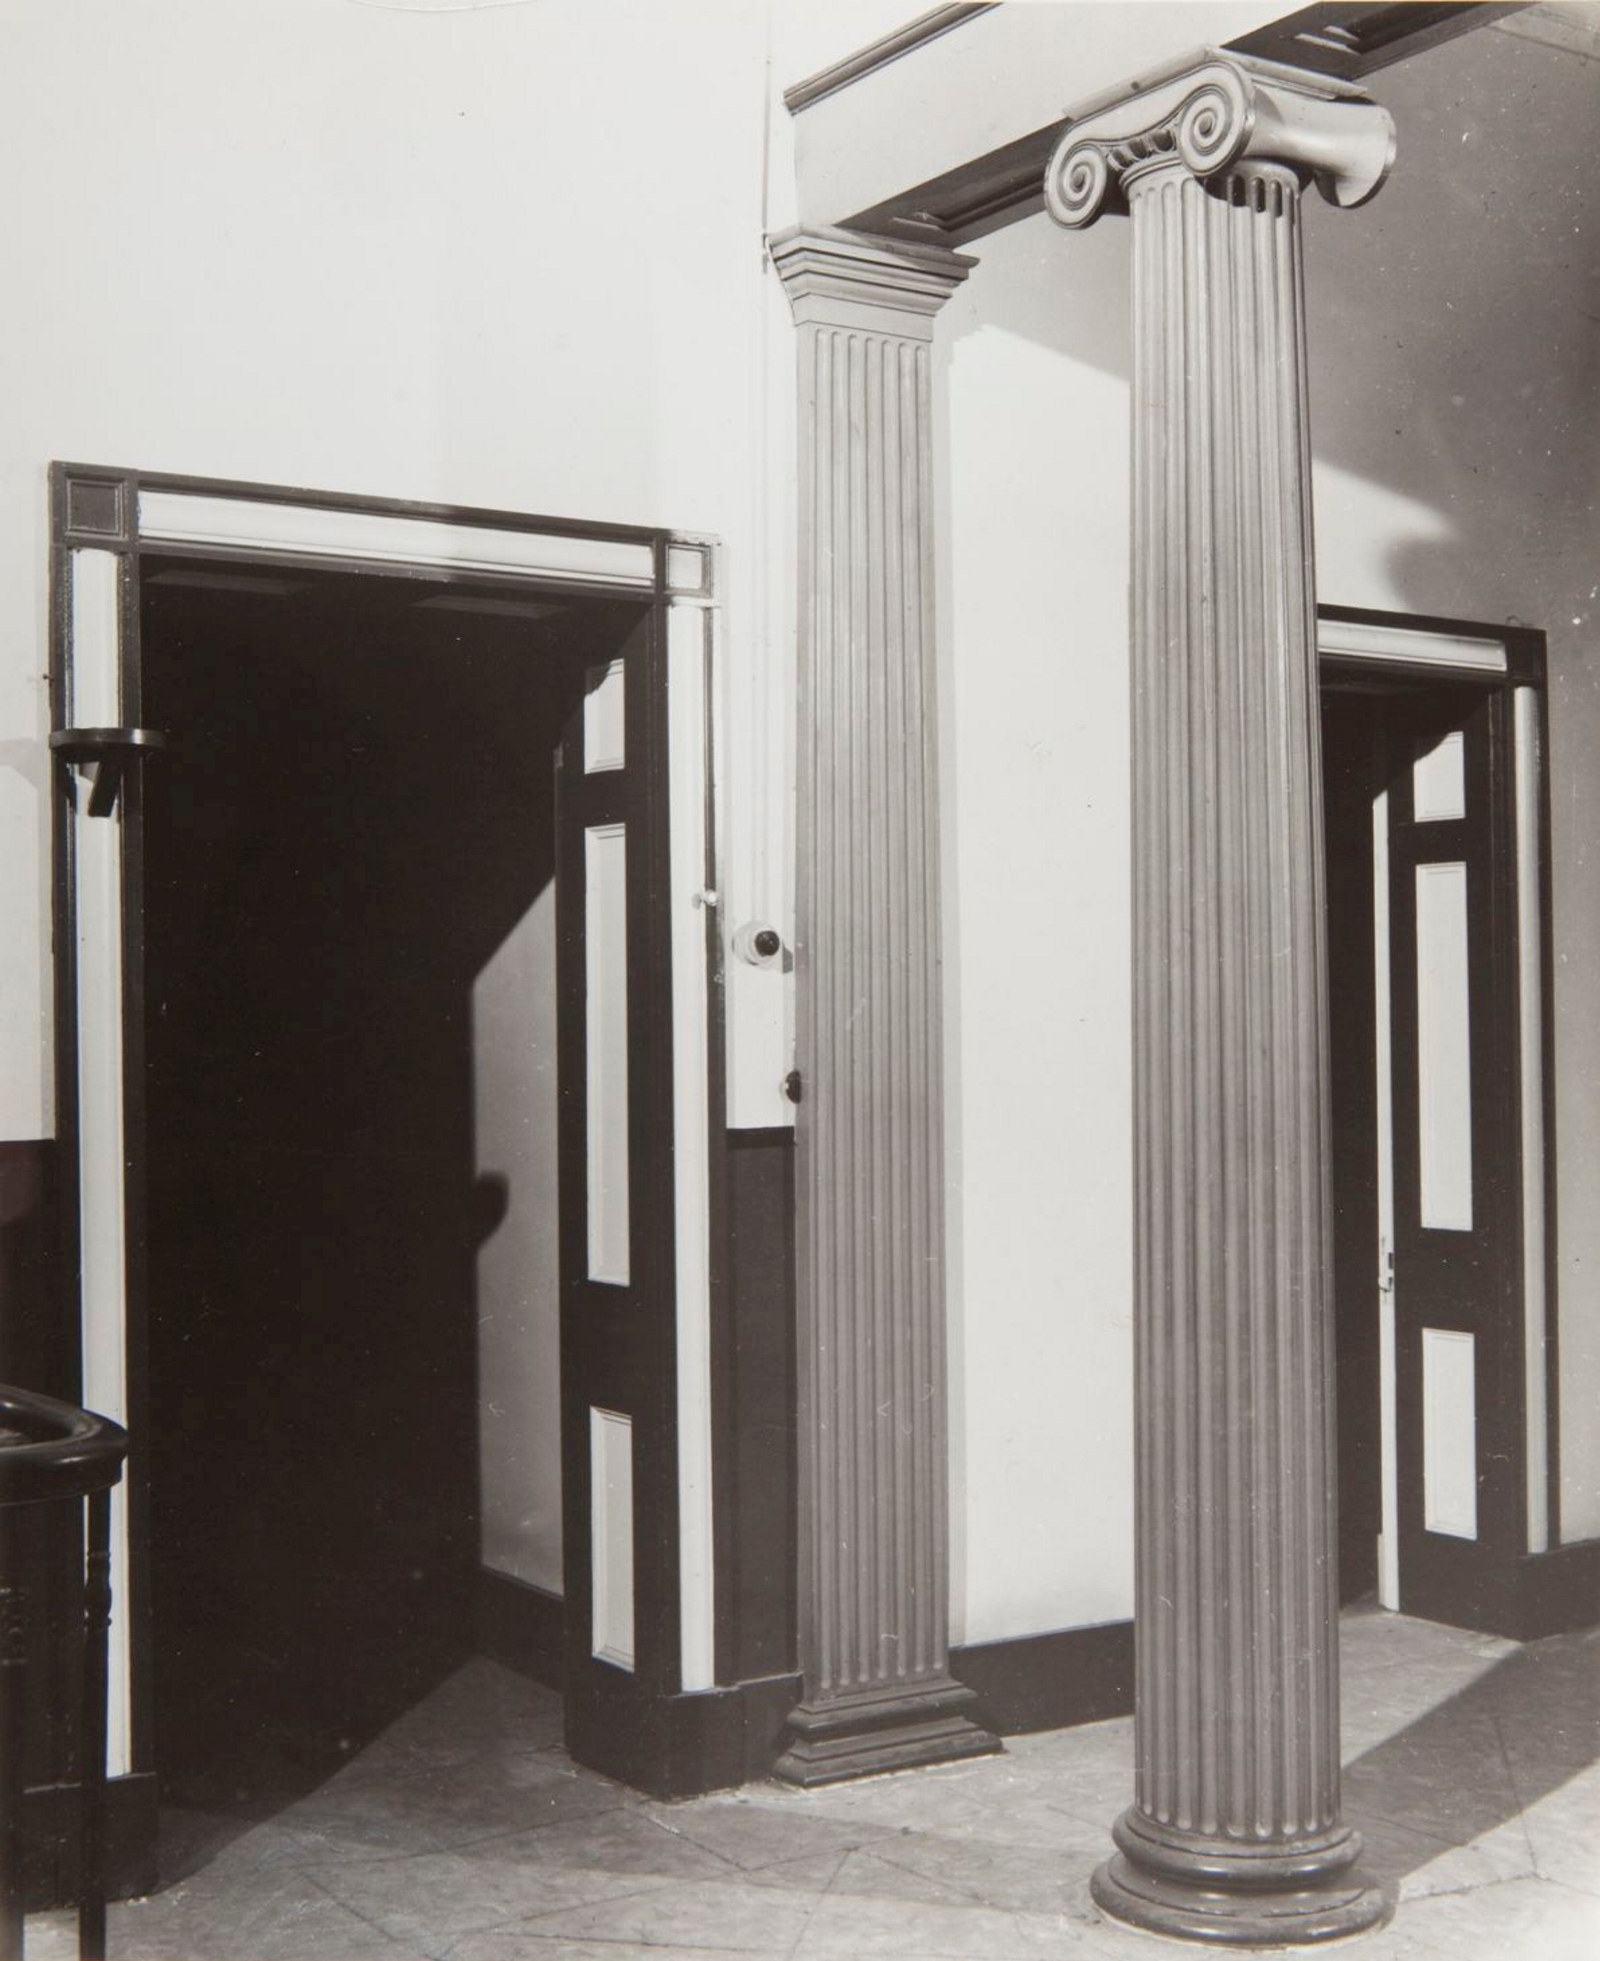 Entrance hall, Subiaco, 1961